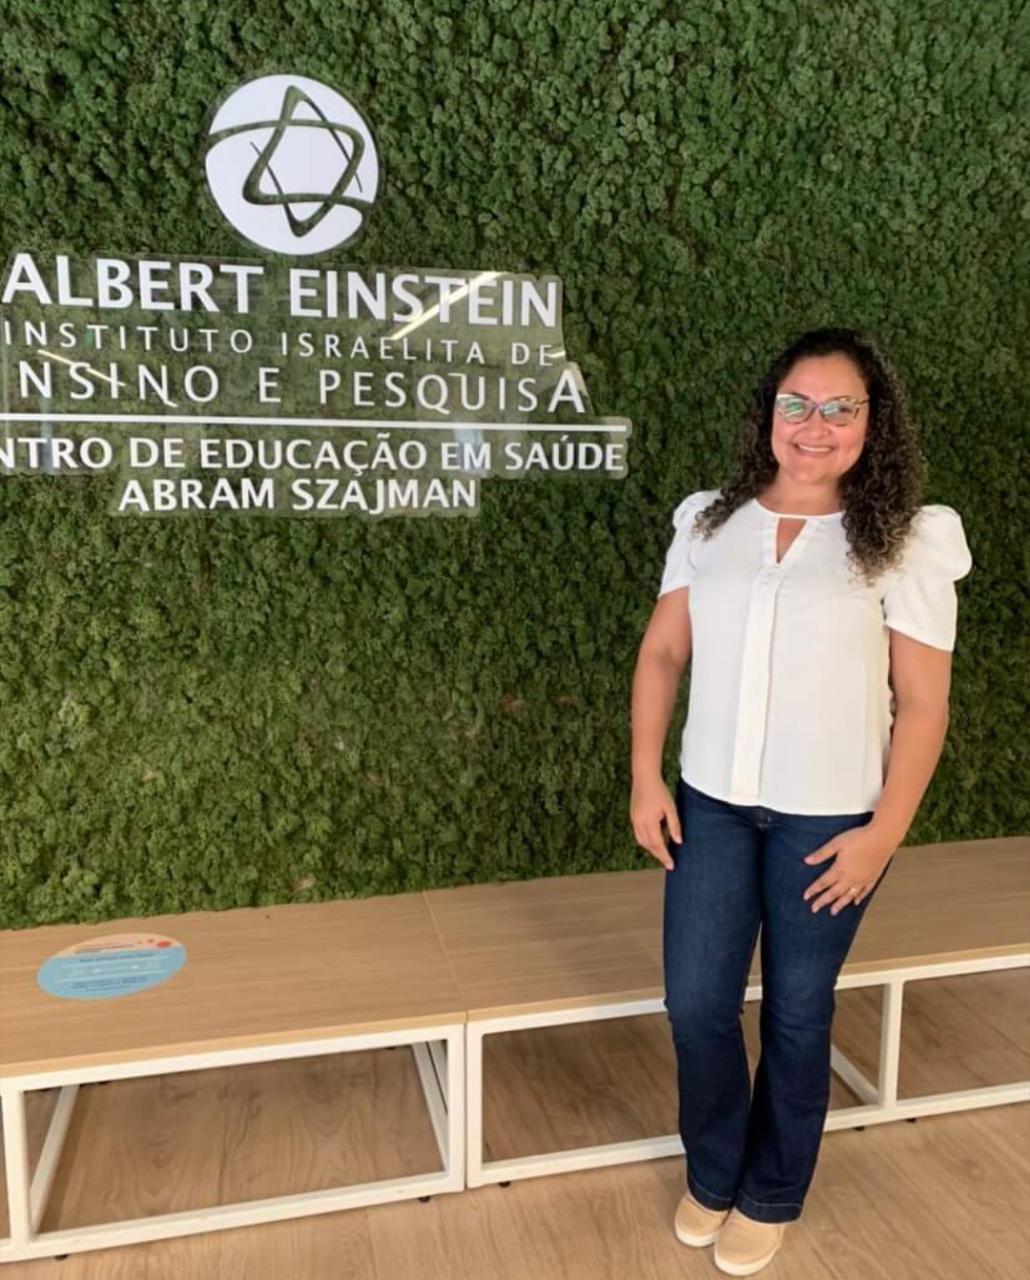 Qualificacao-UPA-3 Coordenadora de enfermagem da UPA de Monteiro participa de qualificação em urgência e emergência no Hospital Albert Einstein em São Paulo